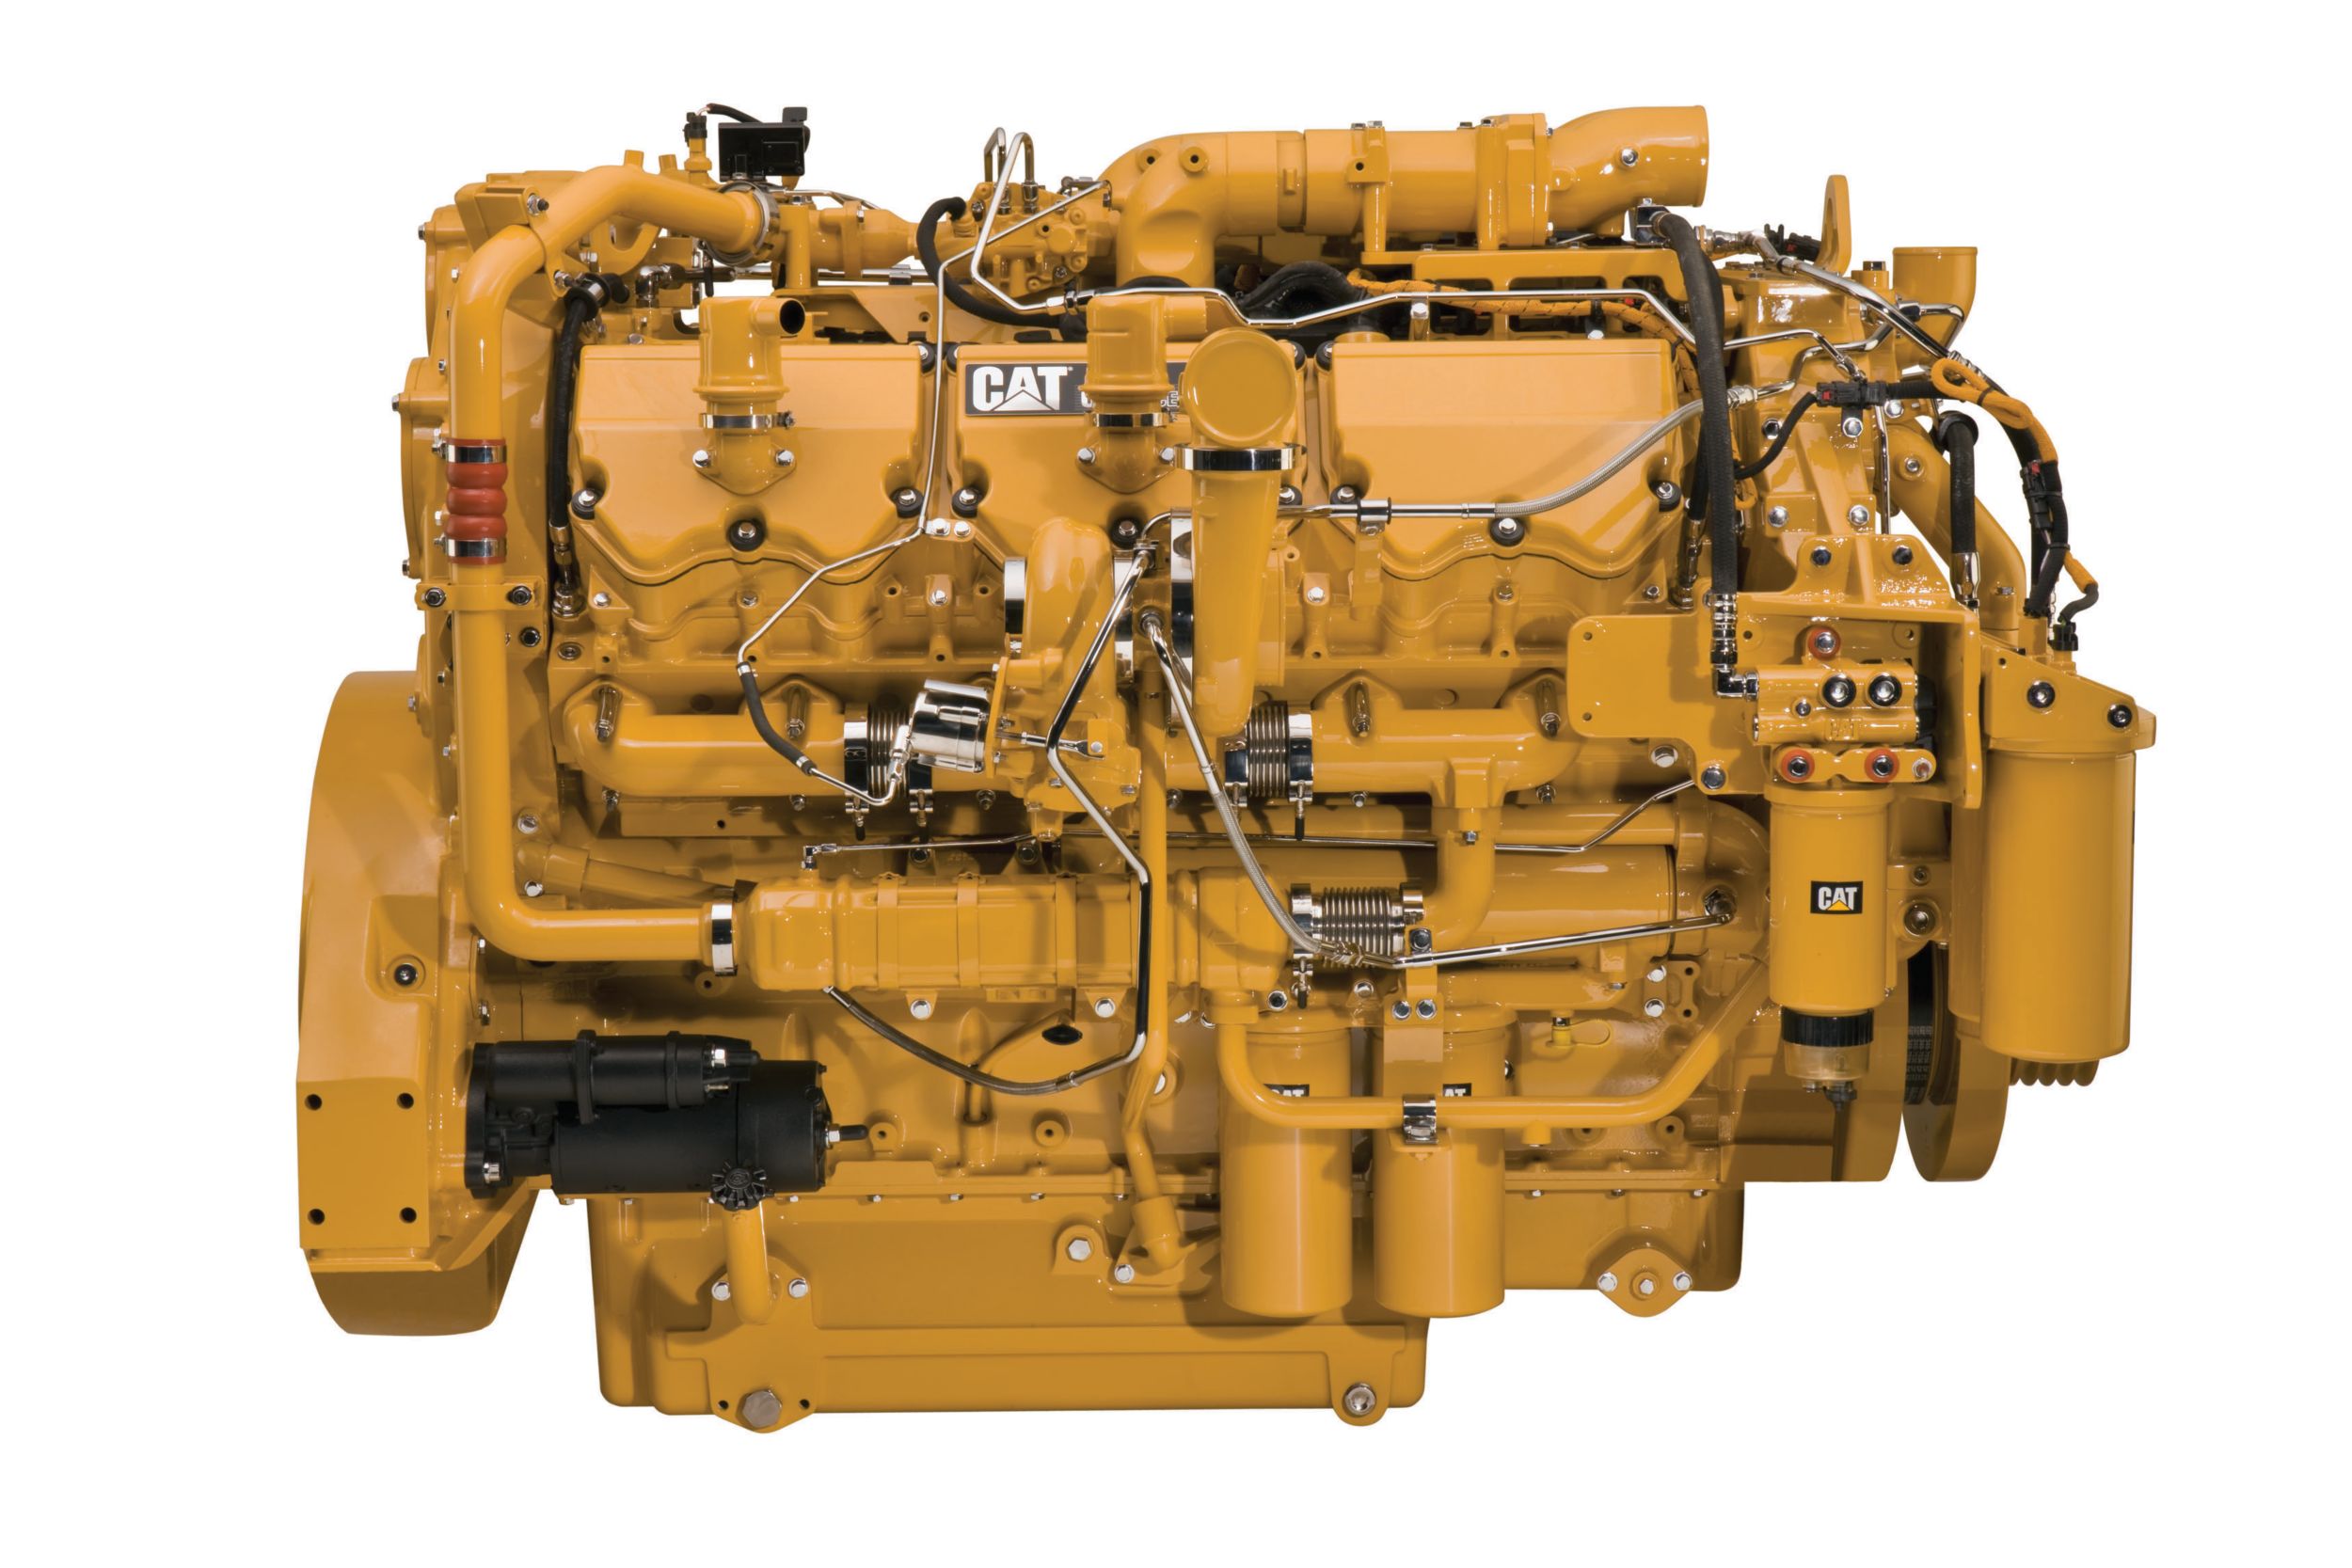 Газовый двигатель C27 ACERT™ Tier 4 Final